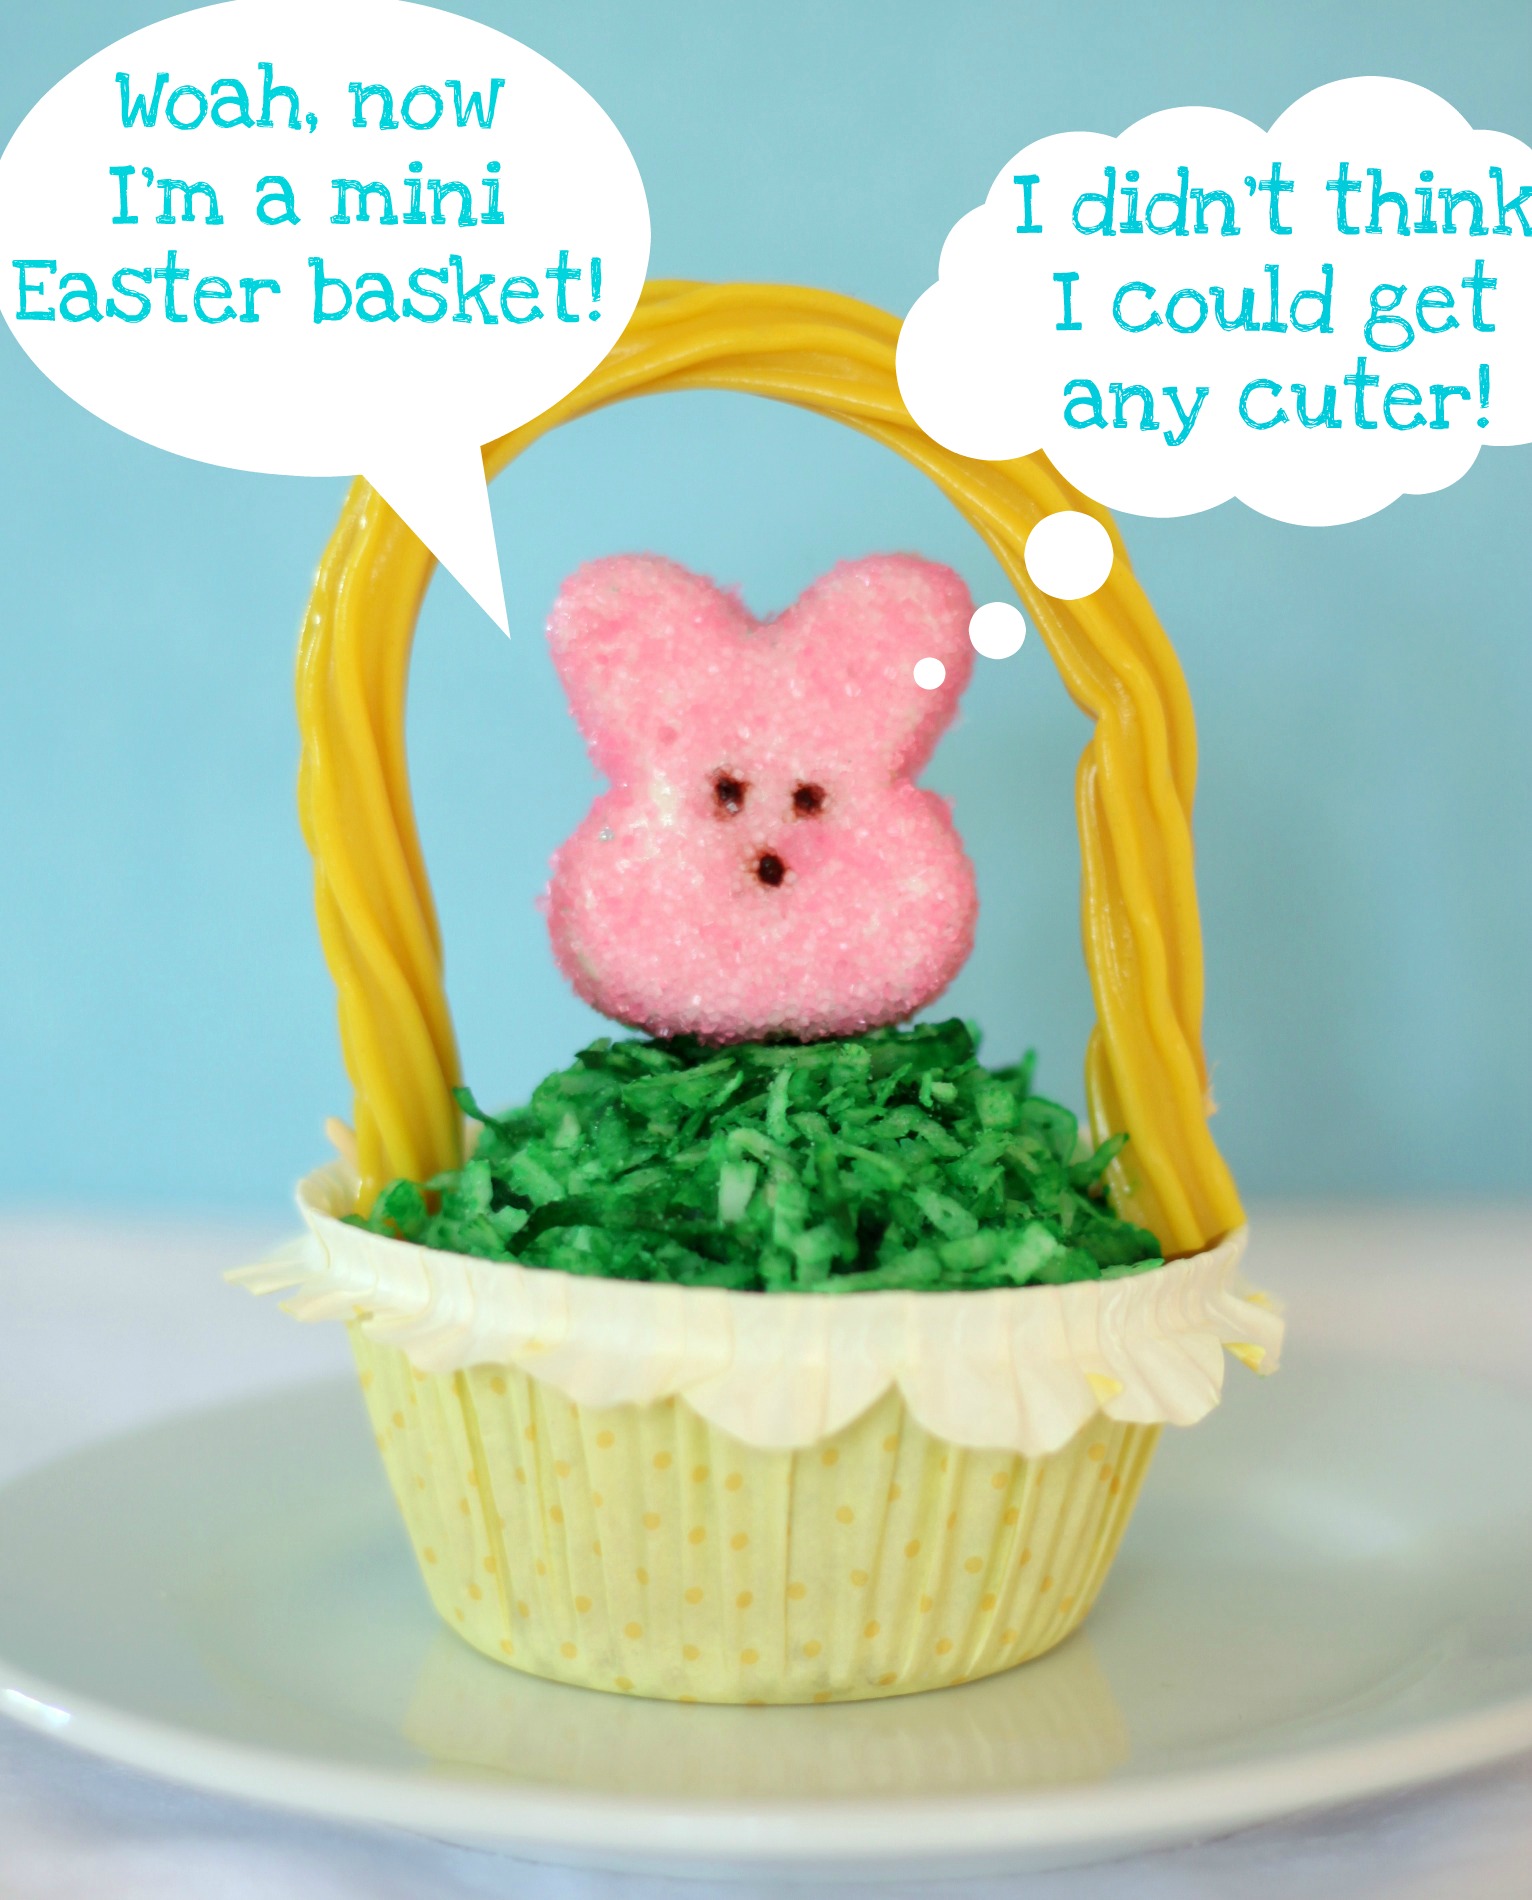 Easter basket peeps cupcake cuter